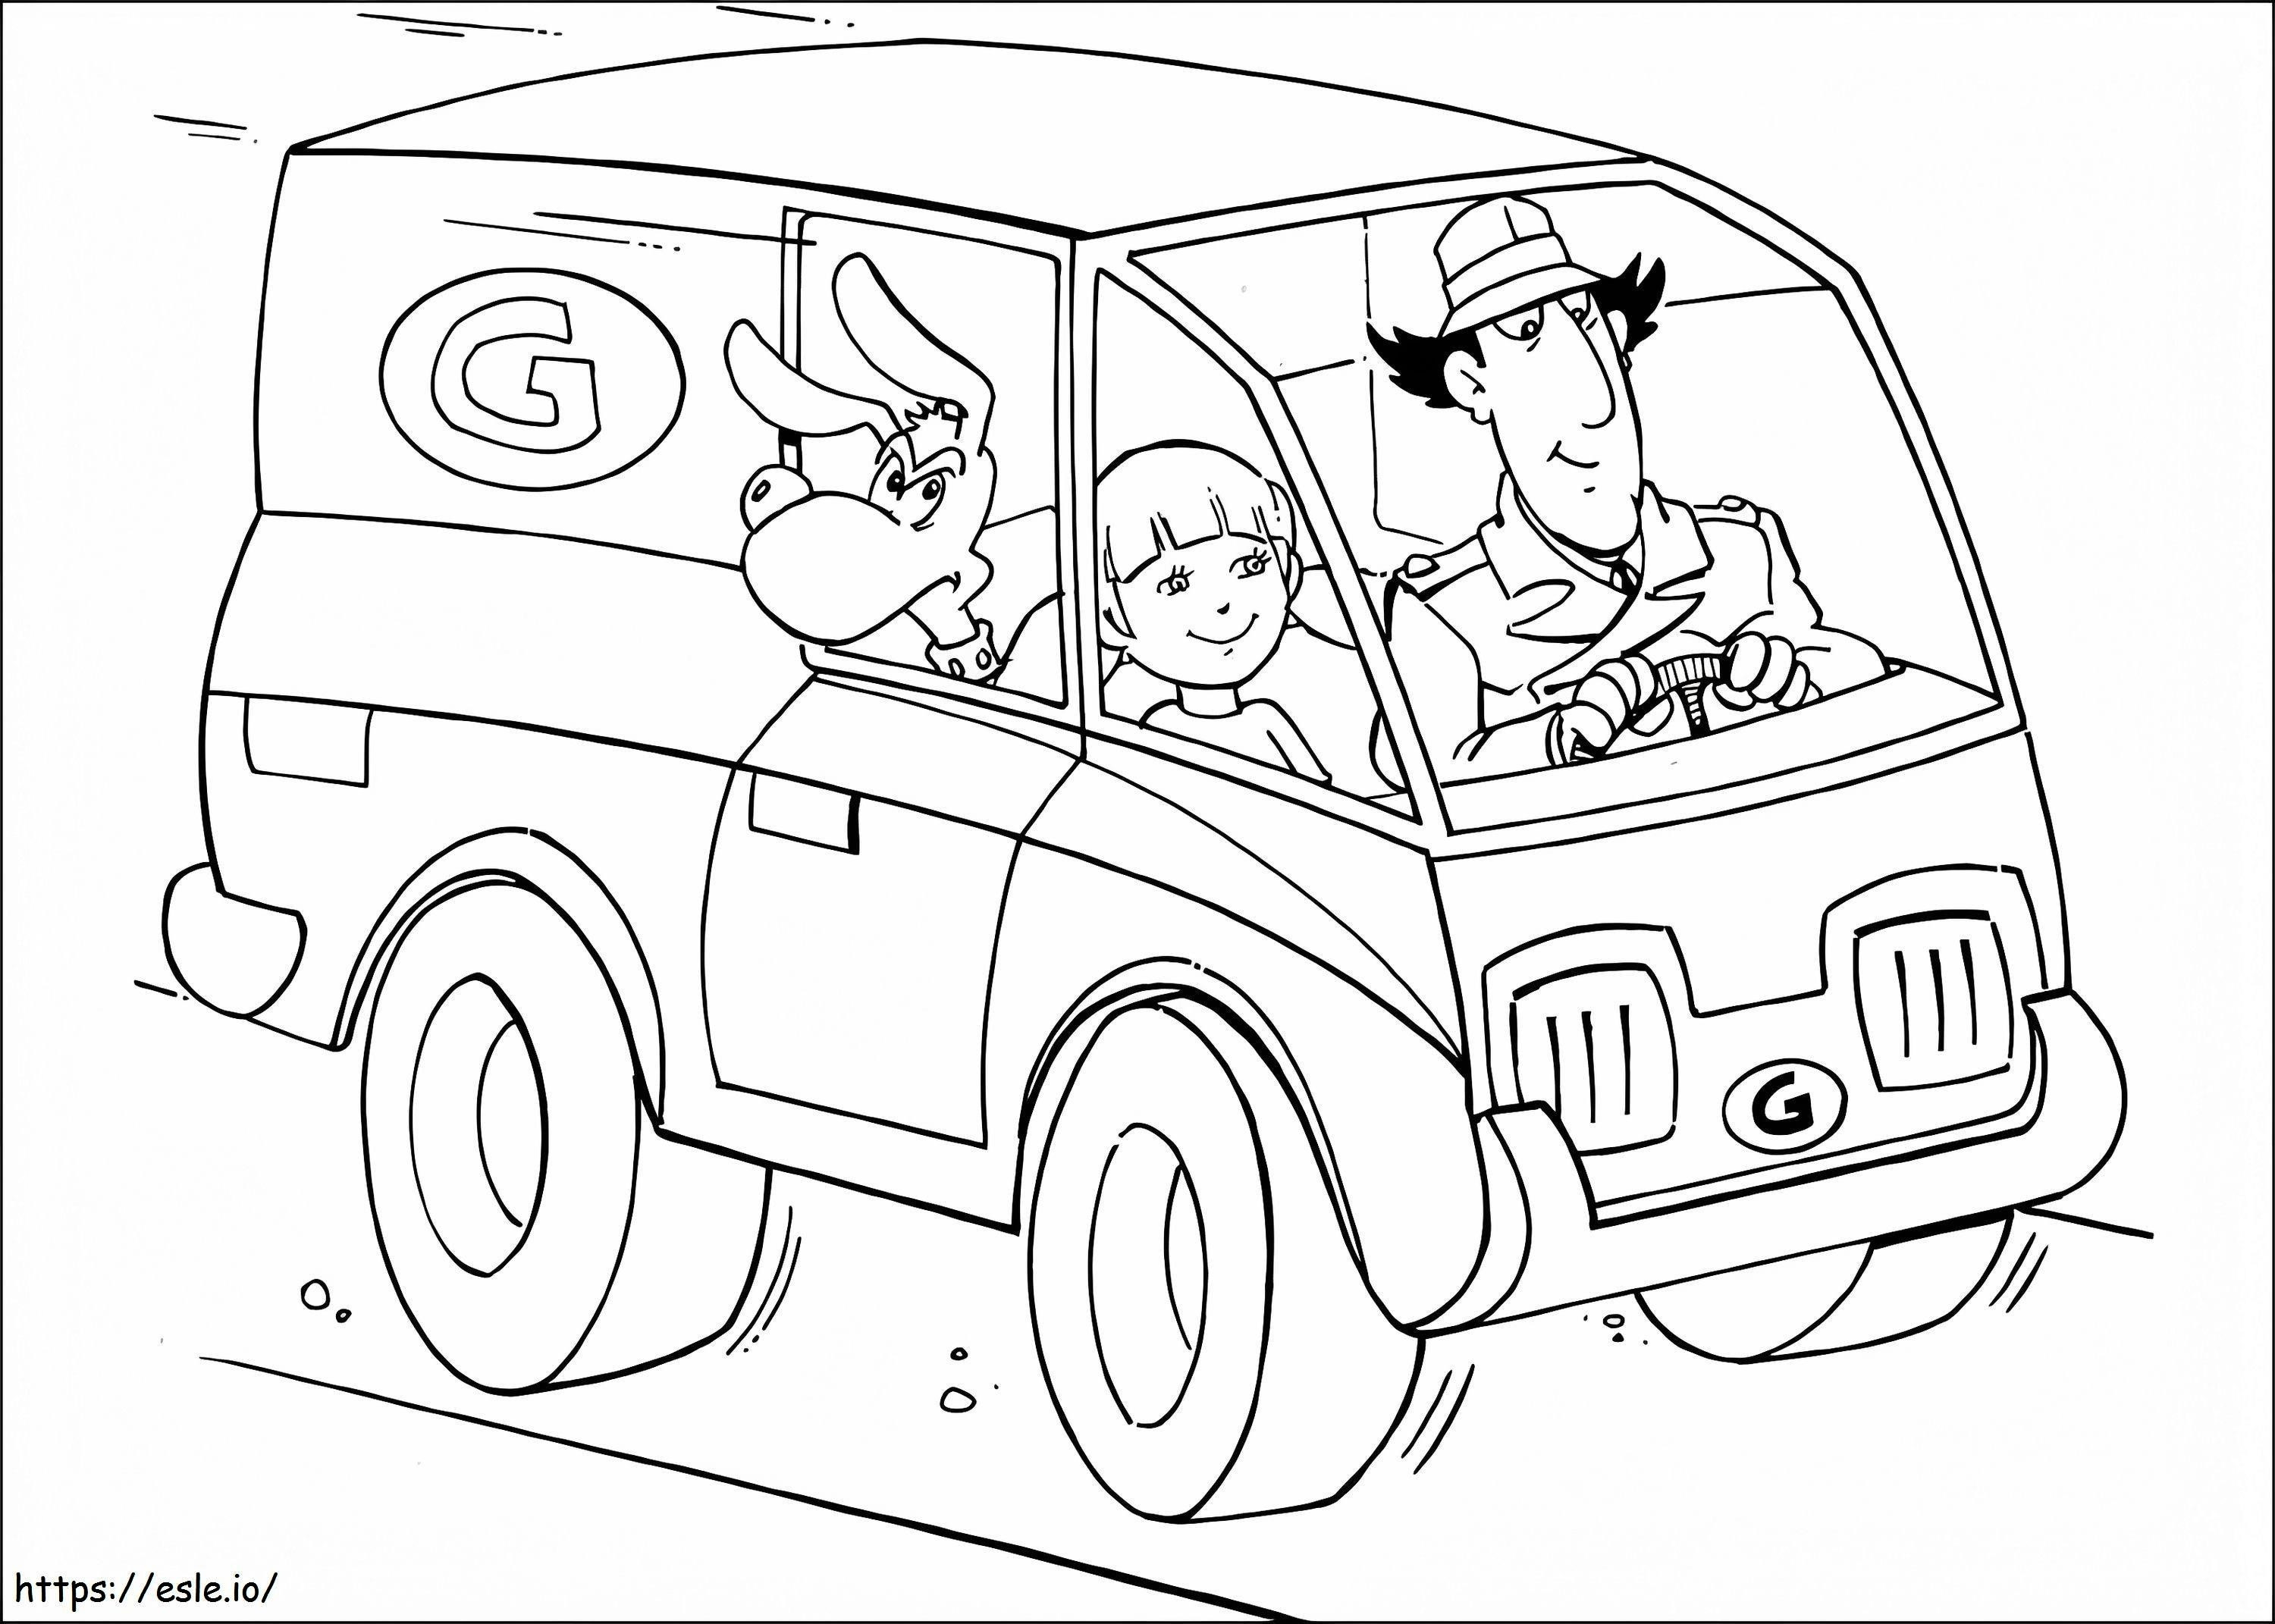 Inspektor Gadżet prowadzący samochód kolorowanka